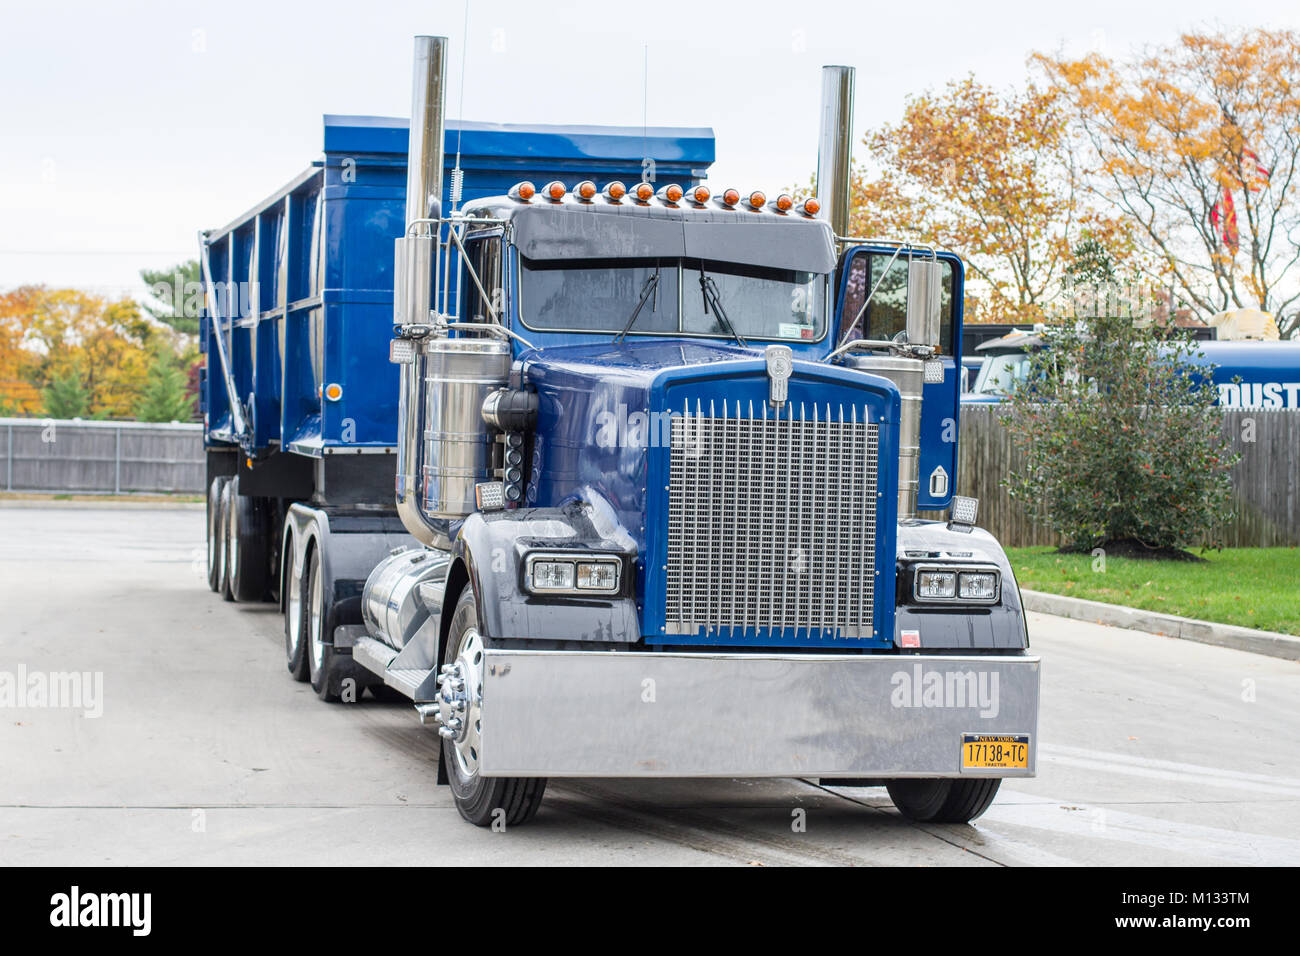 Blau motortruck auf der Straße nach dem Waschen, Long Island, New York, NY, Vereinigte Staaten von Amerika Stockfoto